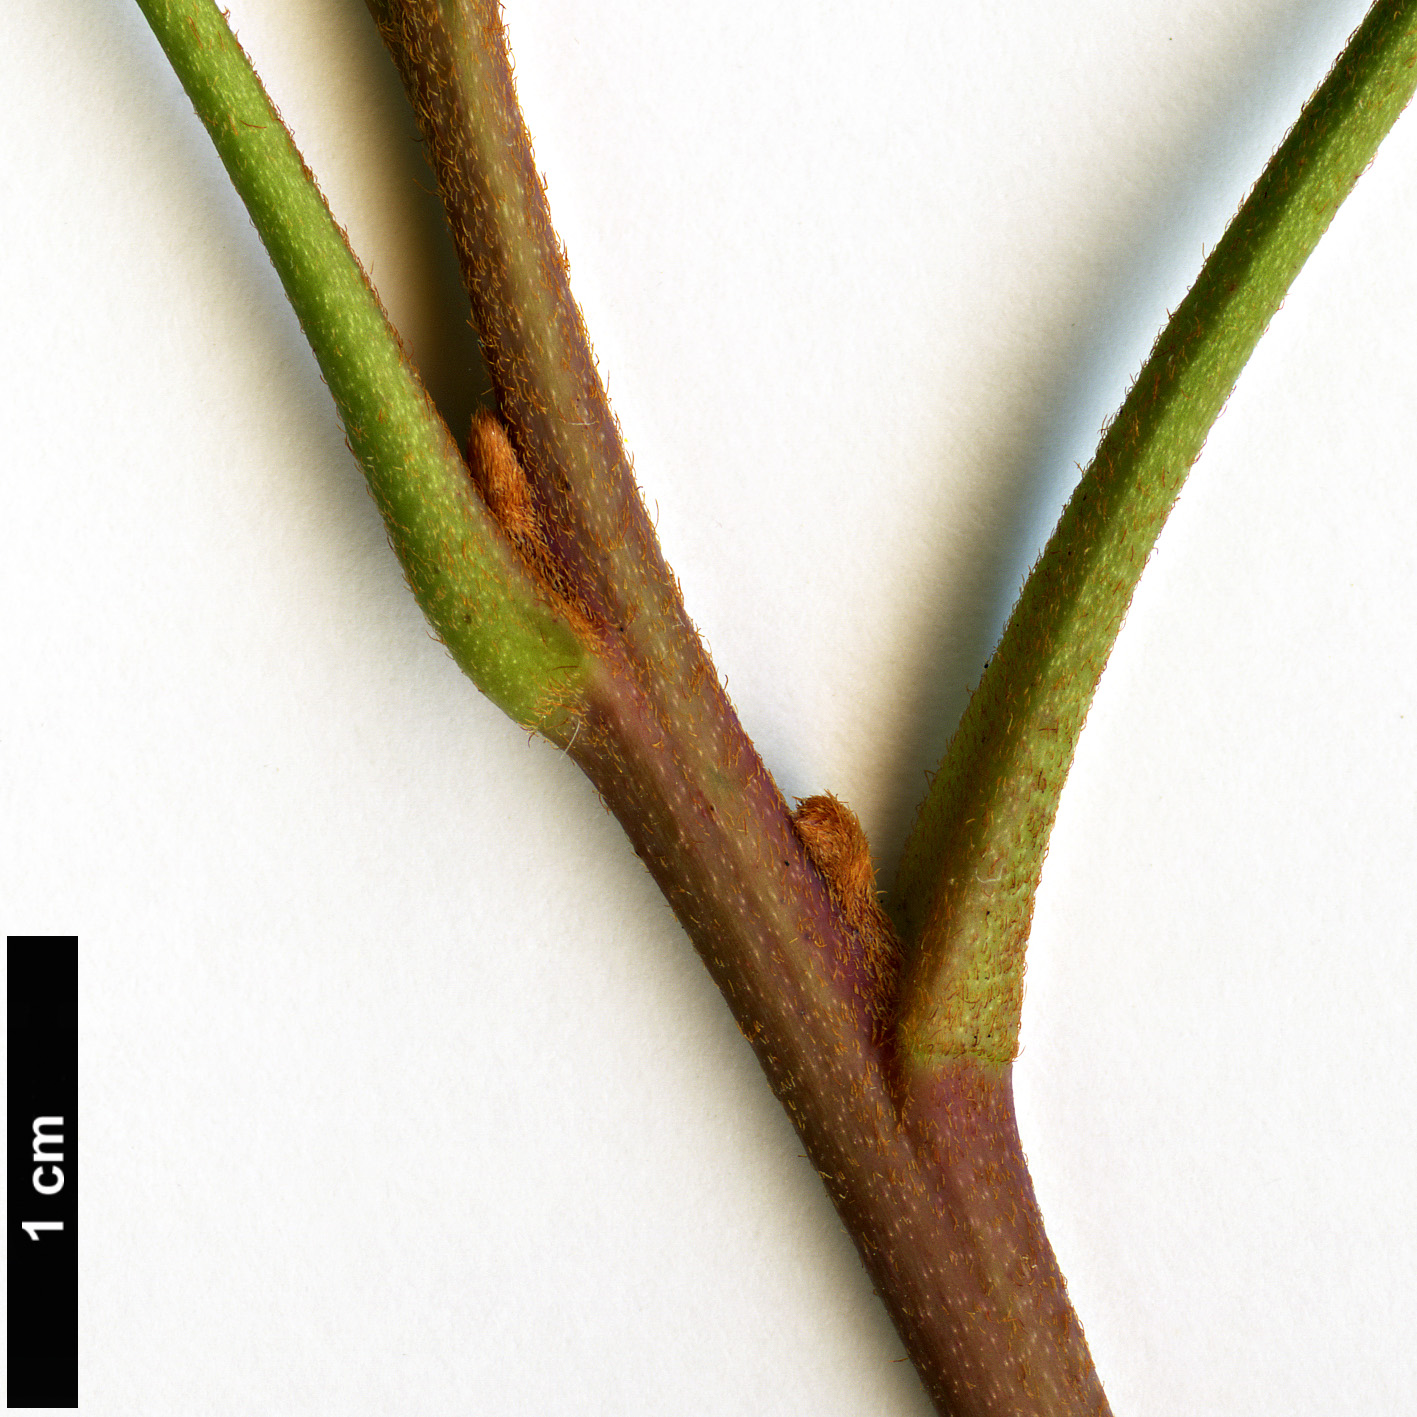 High resolution image: Family: Proteaceae - Genus: Lomatia - Taxon: silaifolia